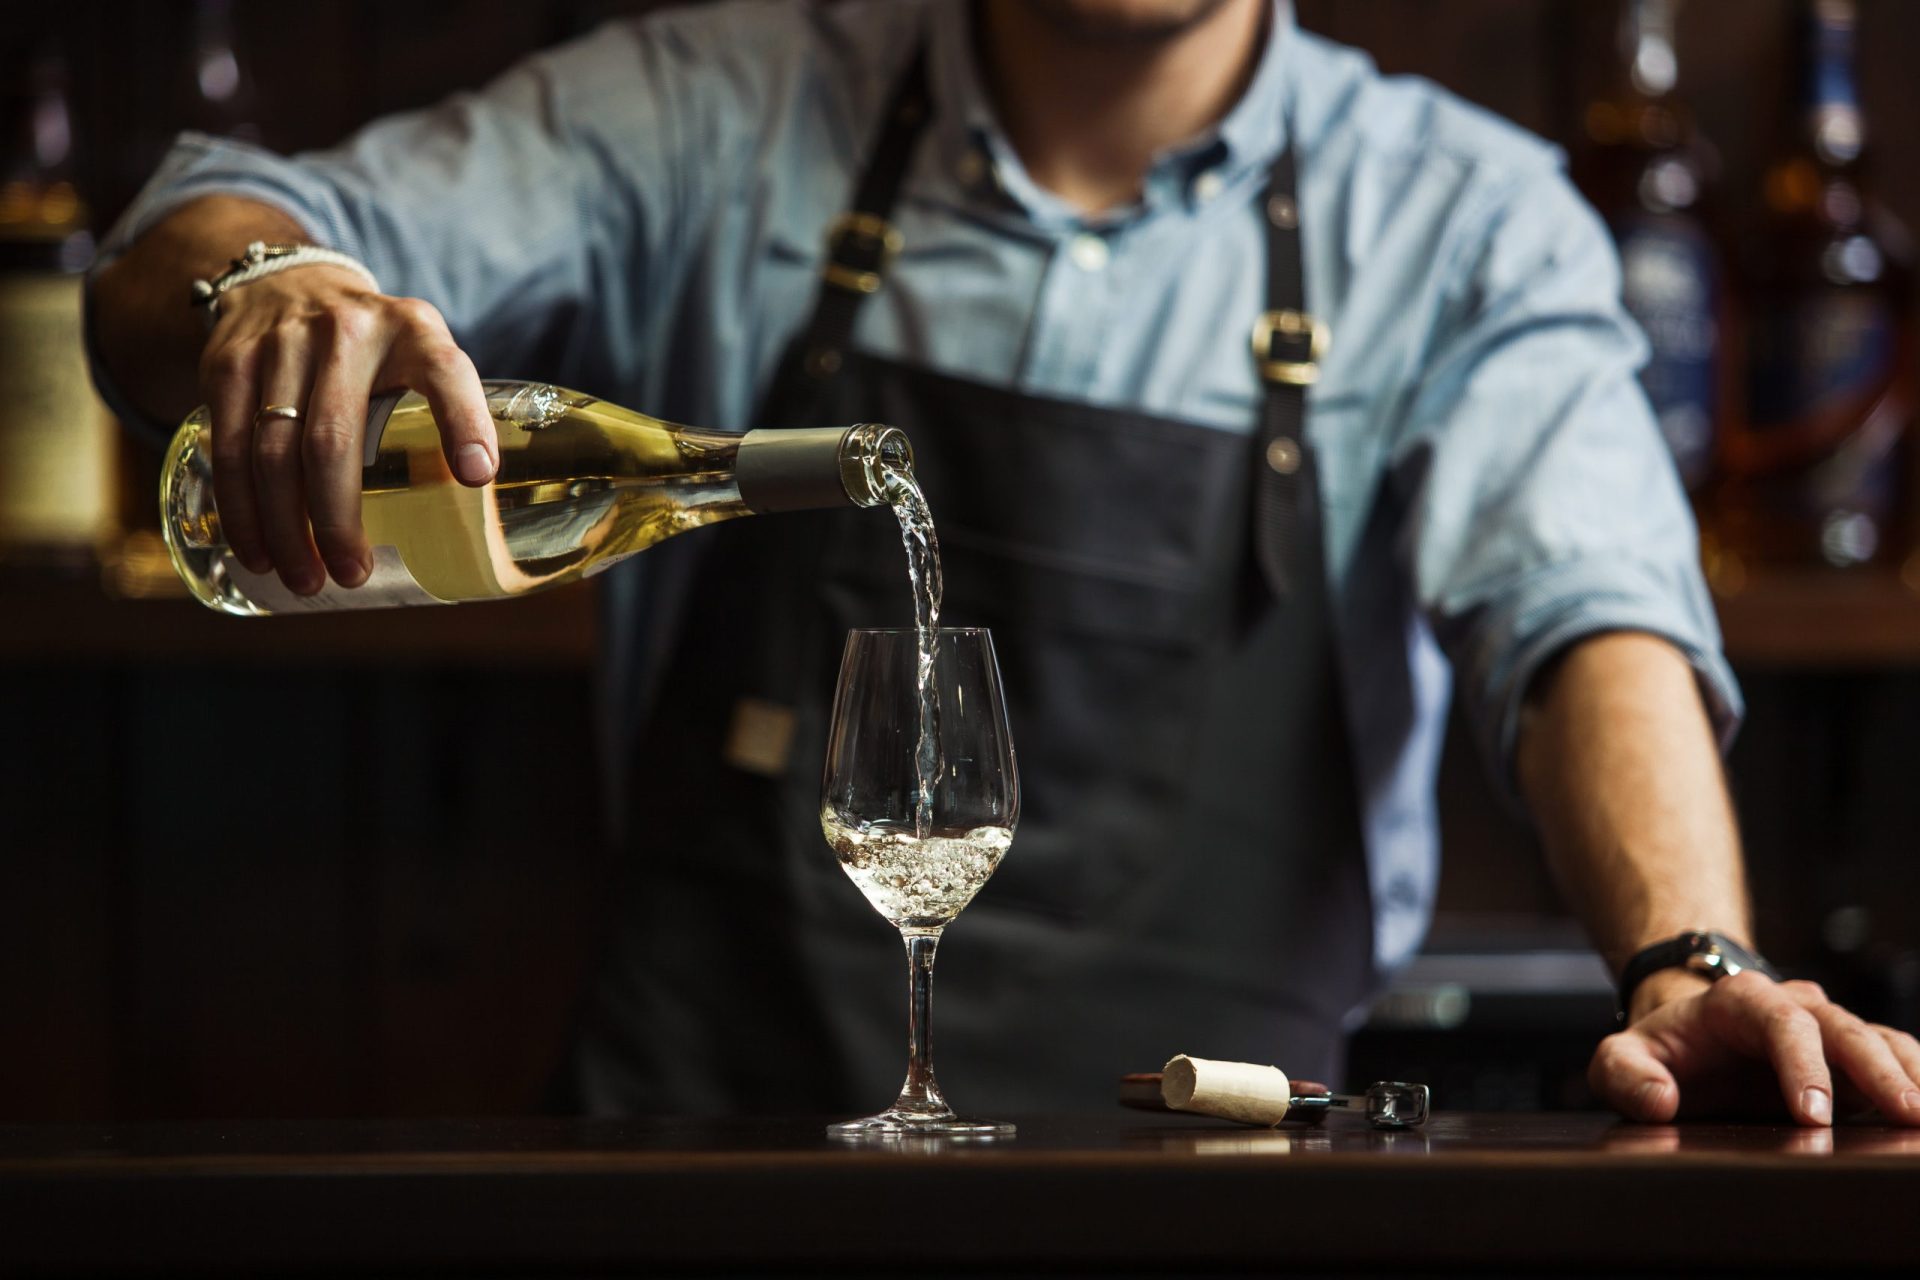 Bebe vinho branco? Um copo por dia pode aumentar o risco de desenvolvimento de cancro da próstata